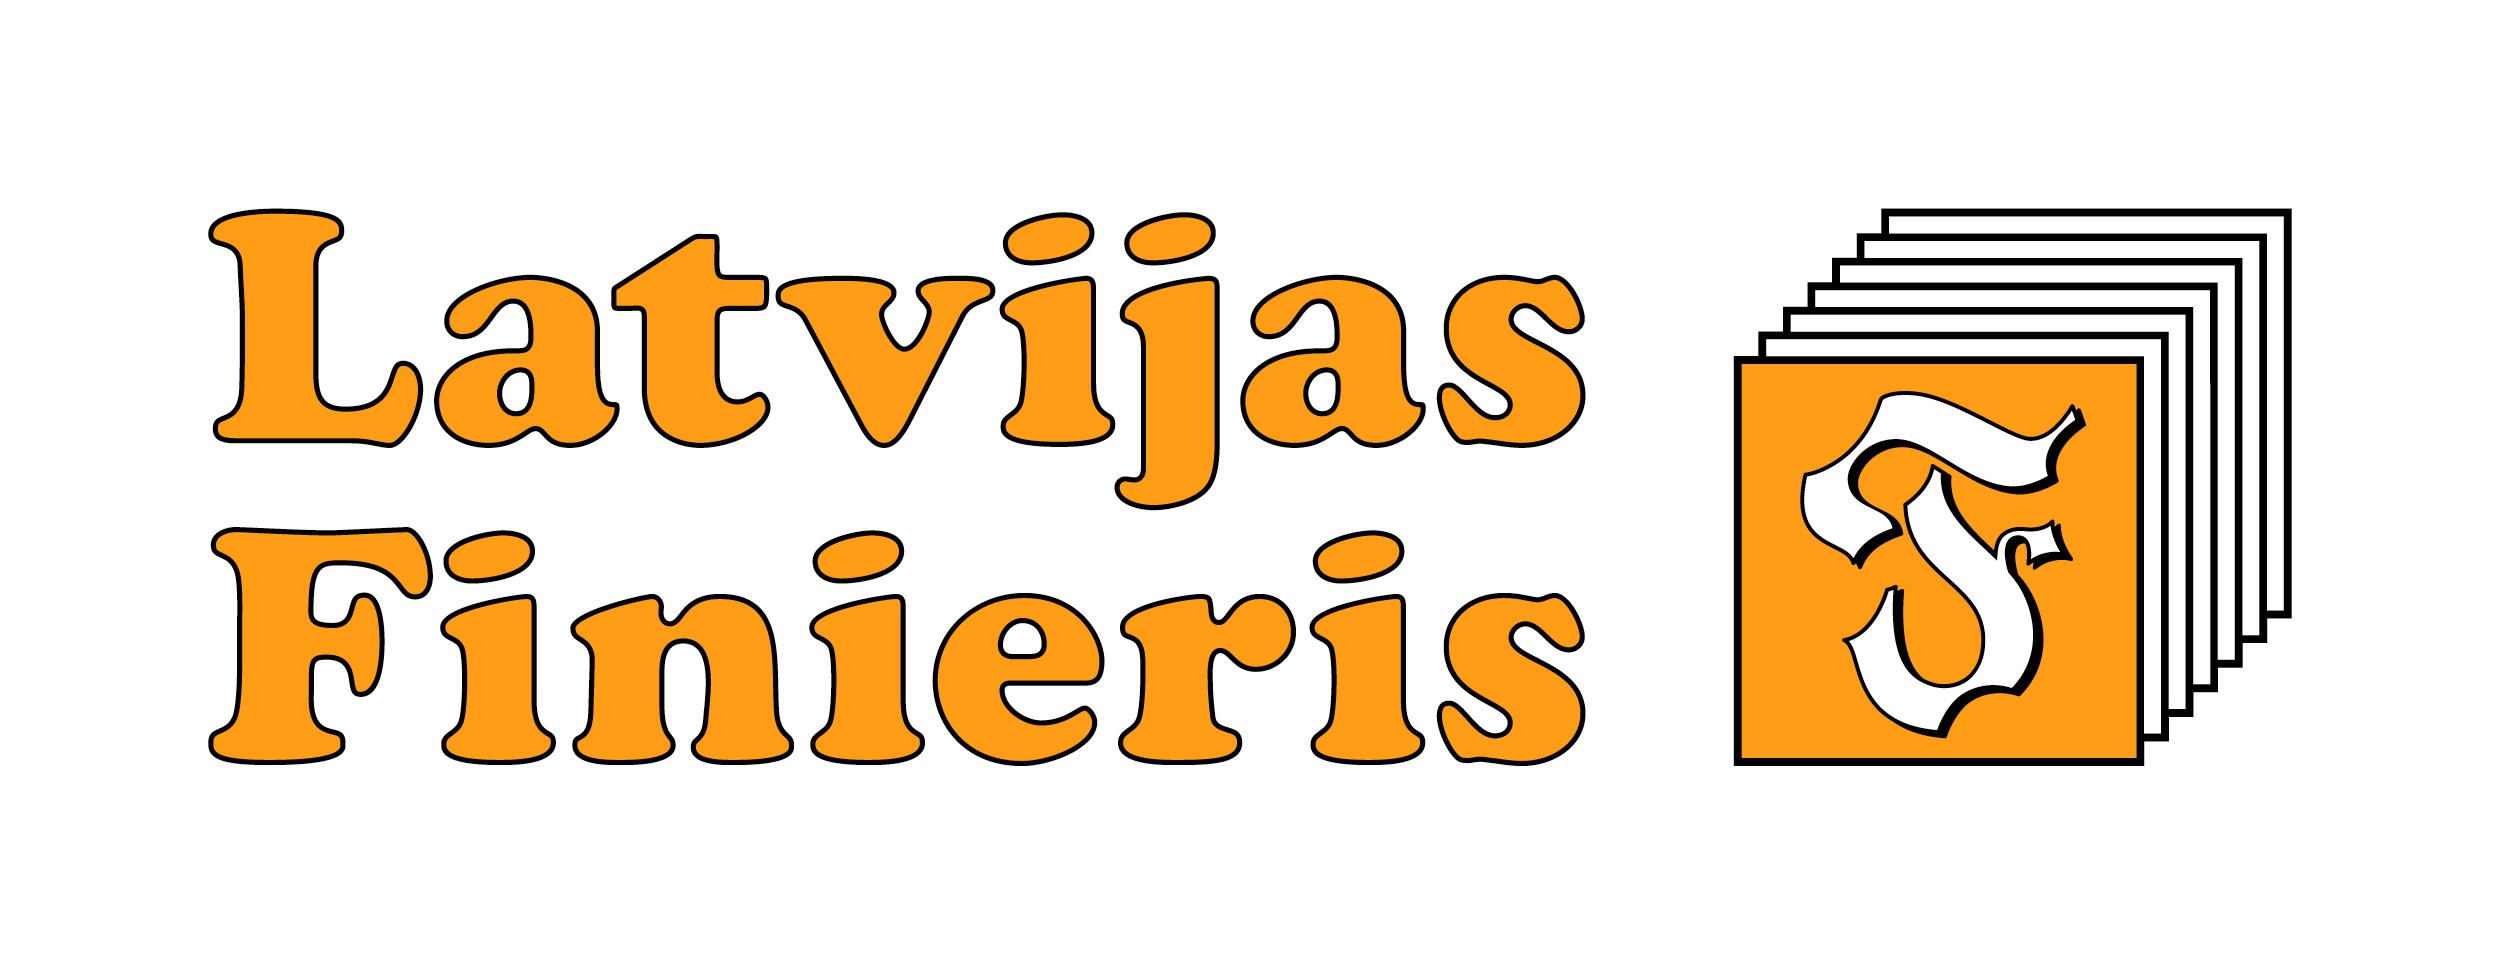 AS Latvijas Finieris logo